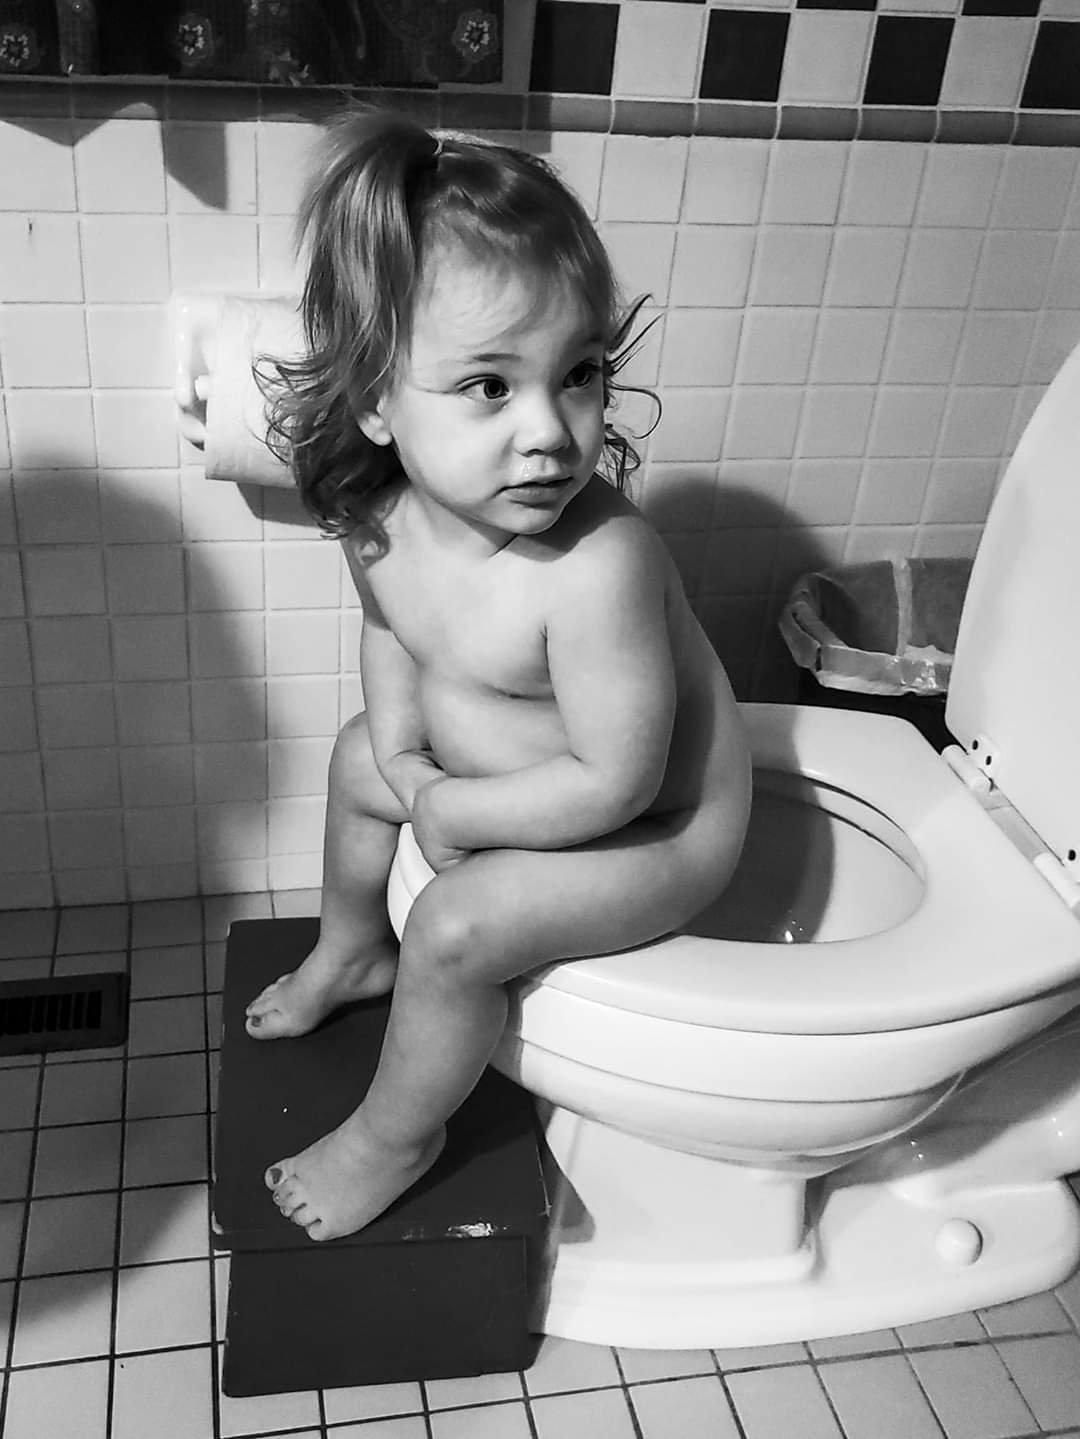 little girl toilet training